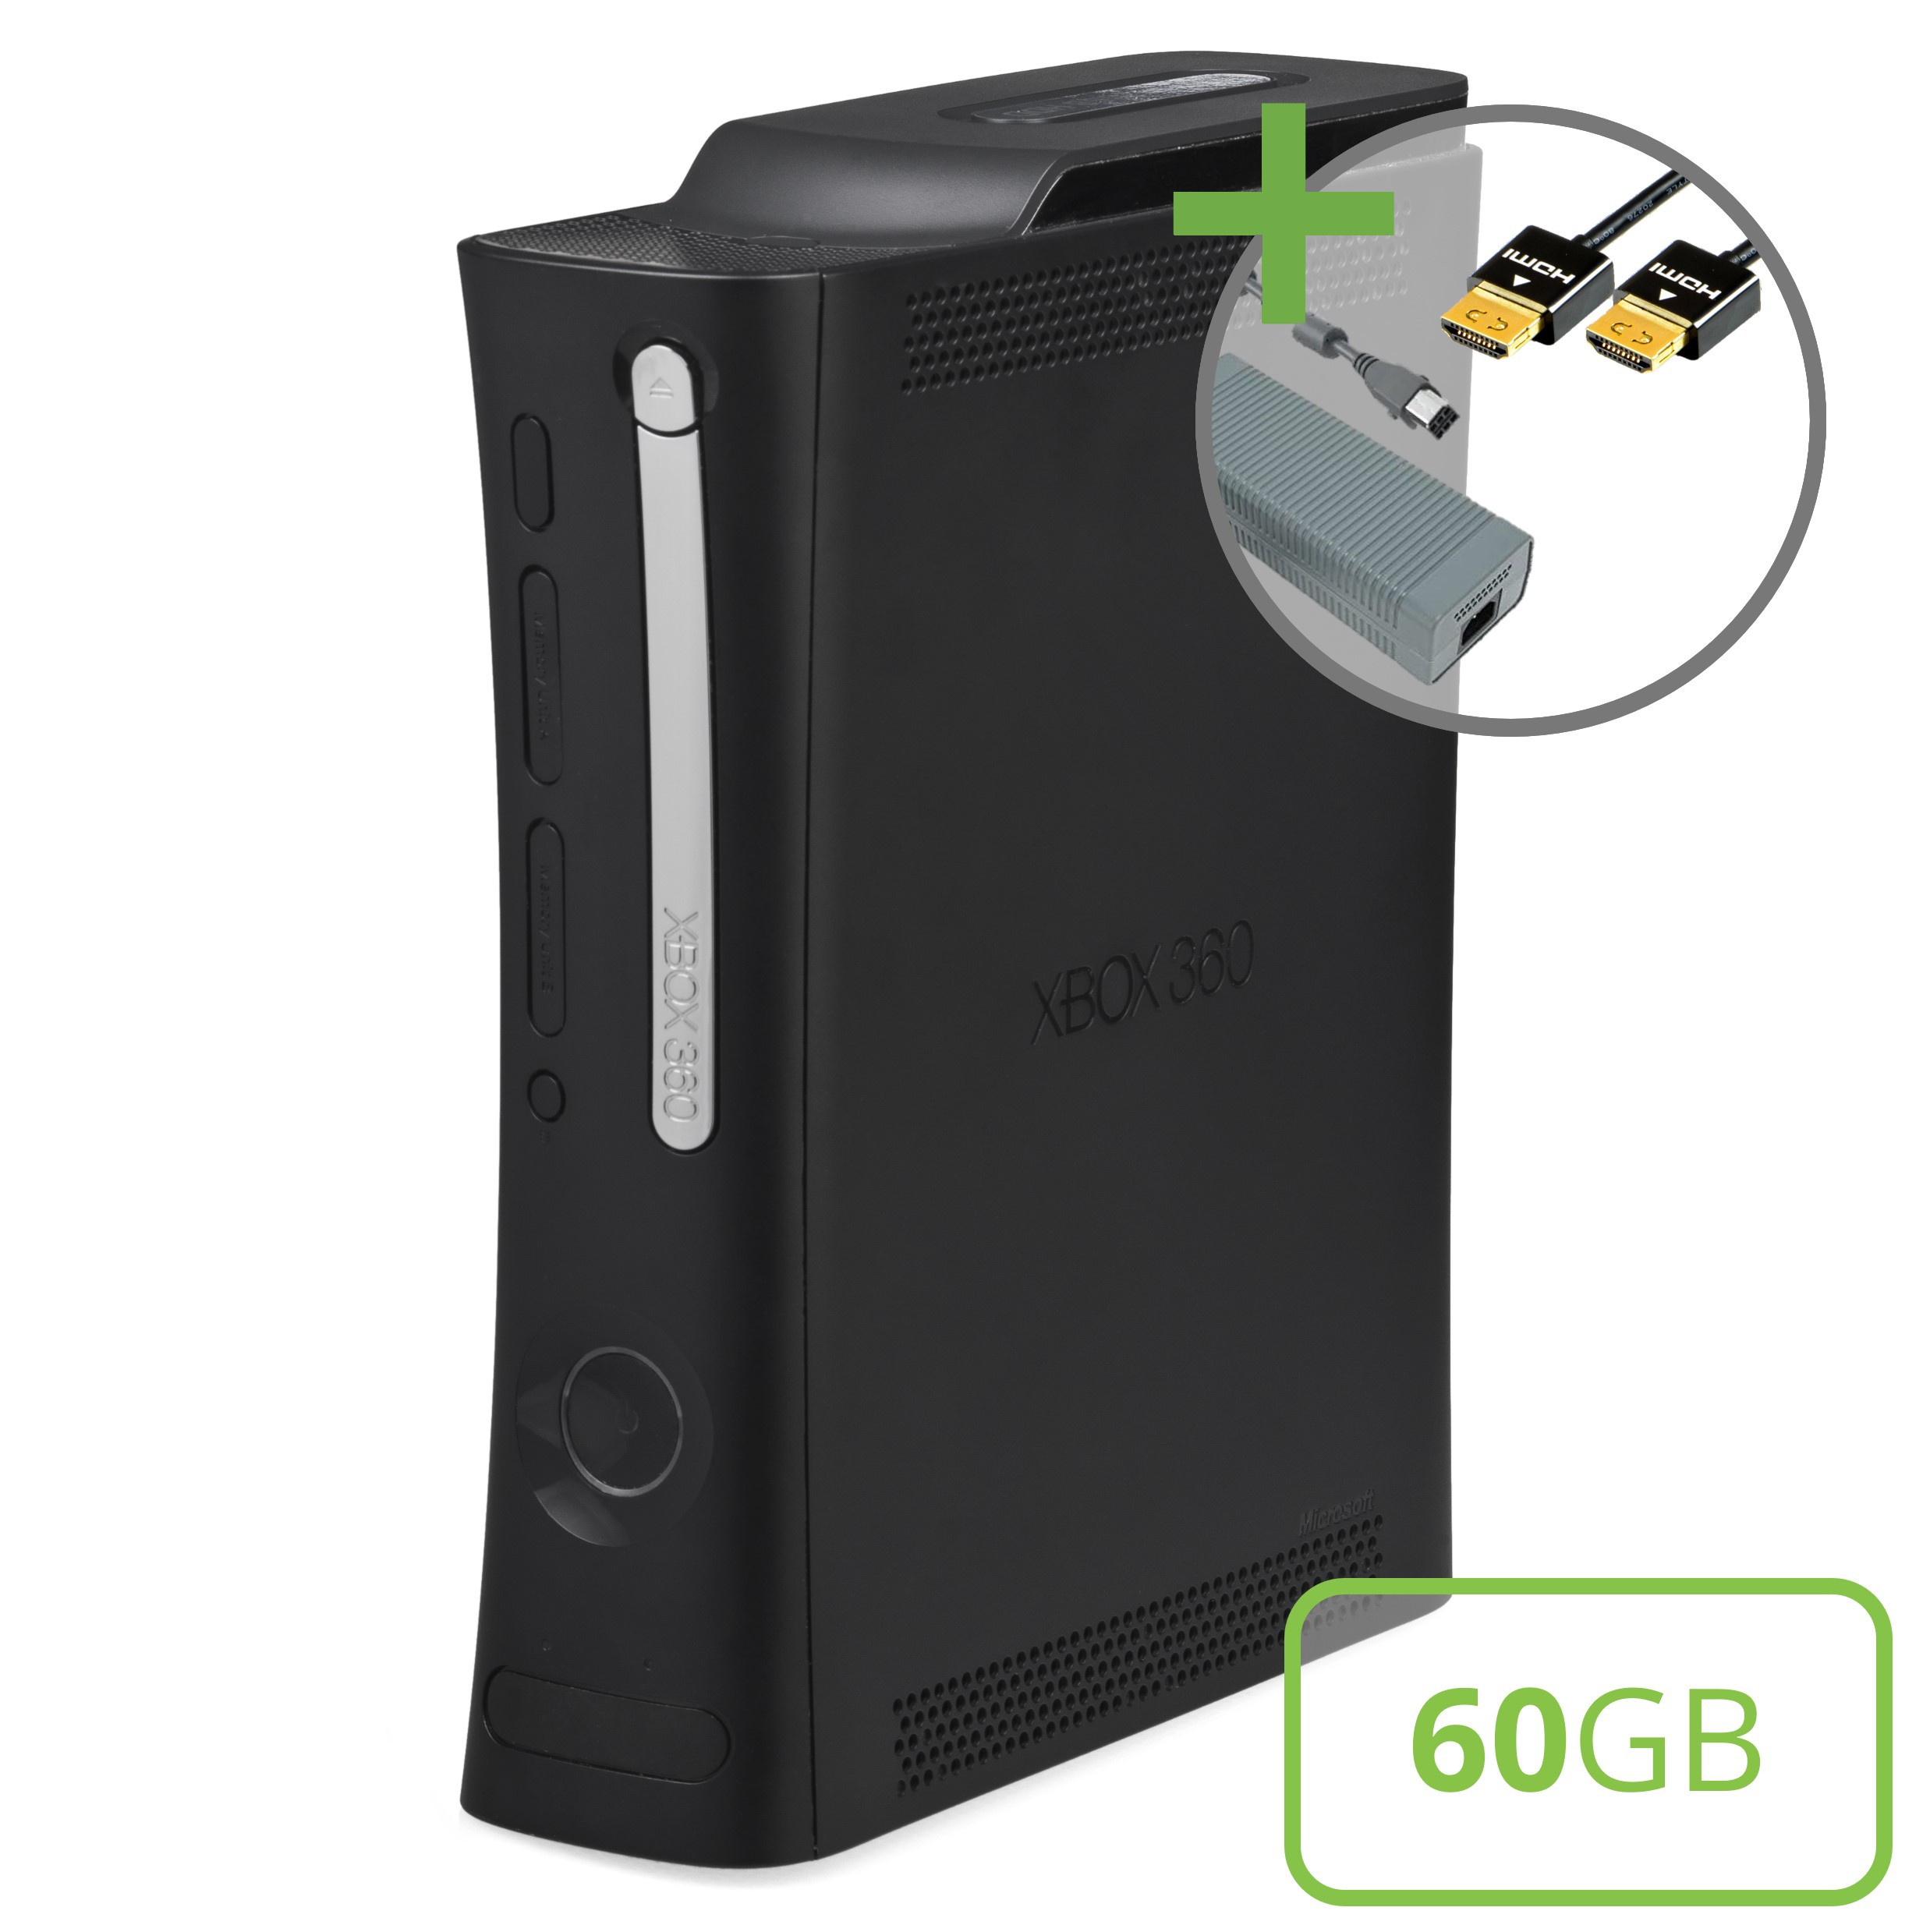 Microsoft Xbox 360 Elite Console (60GB) - Xbox 360 Hardware